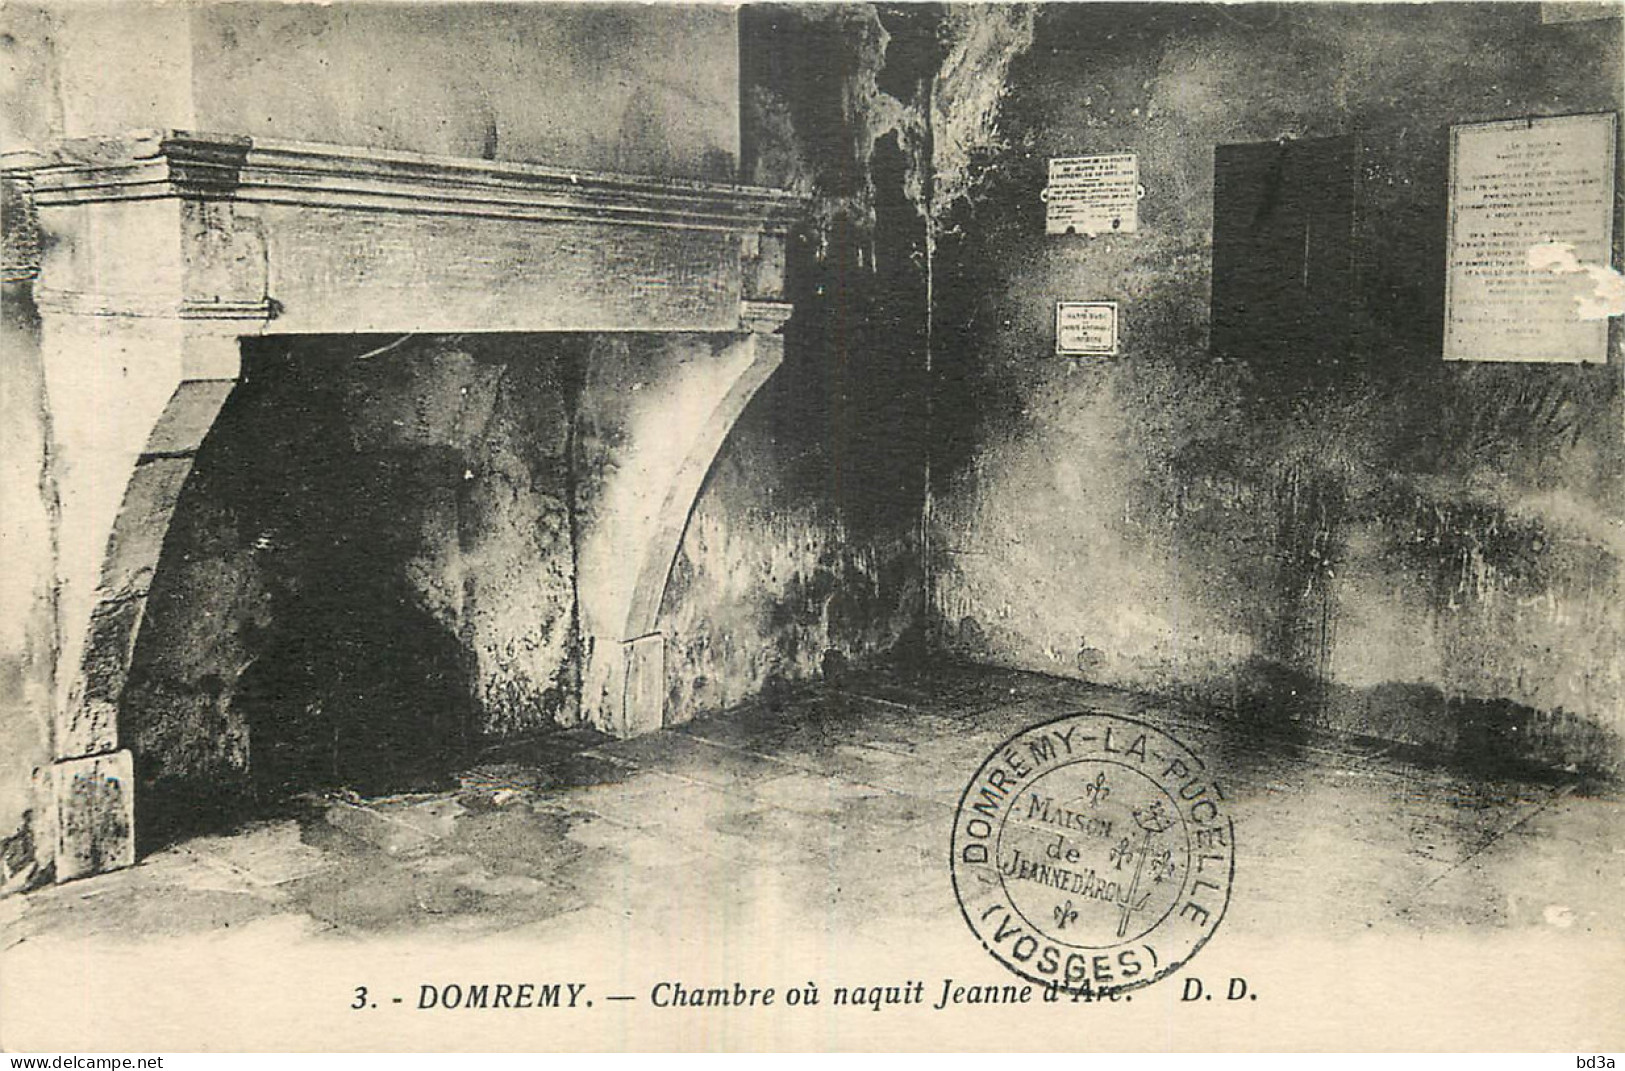 88 - DOMREMY - CHAMBRE DE JEANNE D'ARC - Domremy La Pucelle